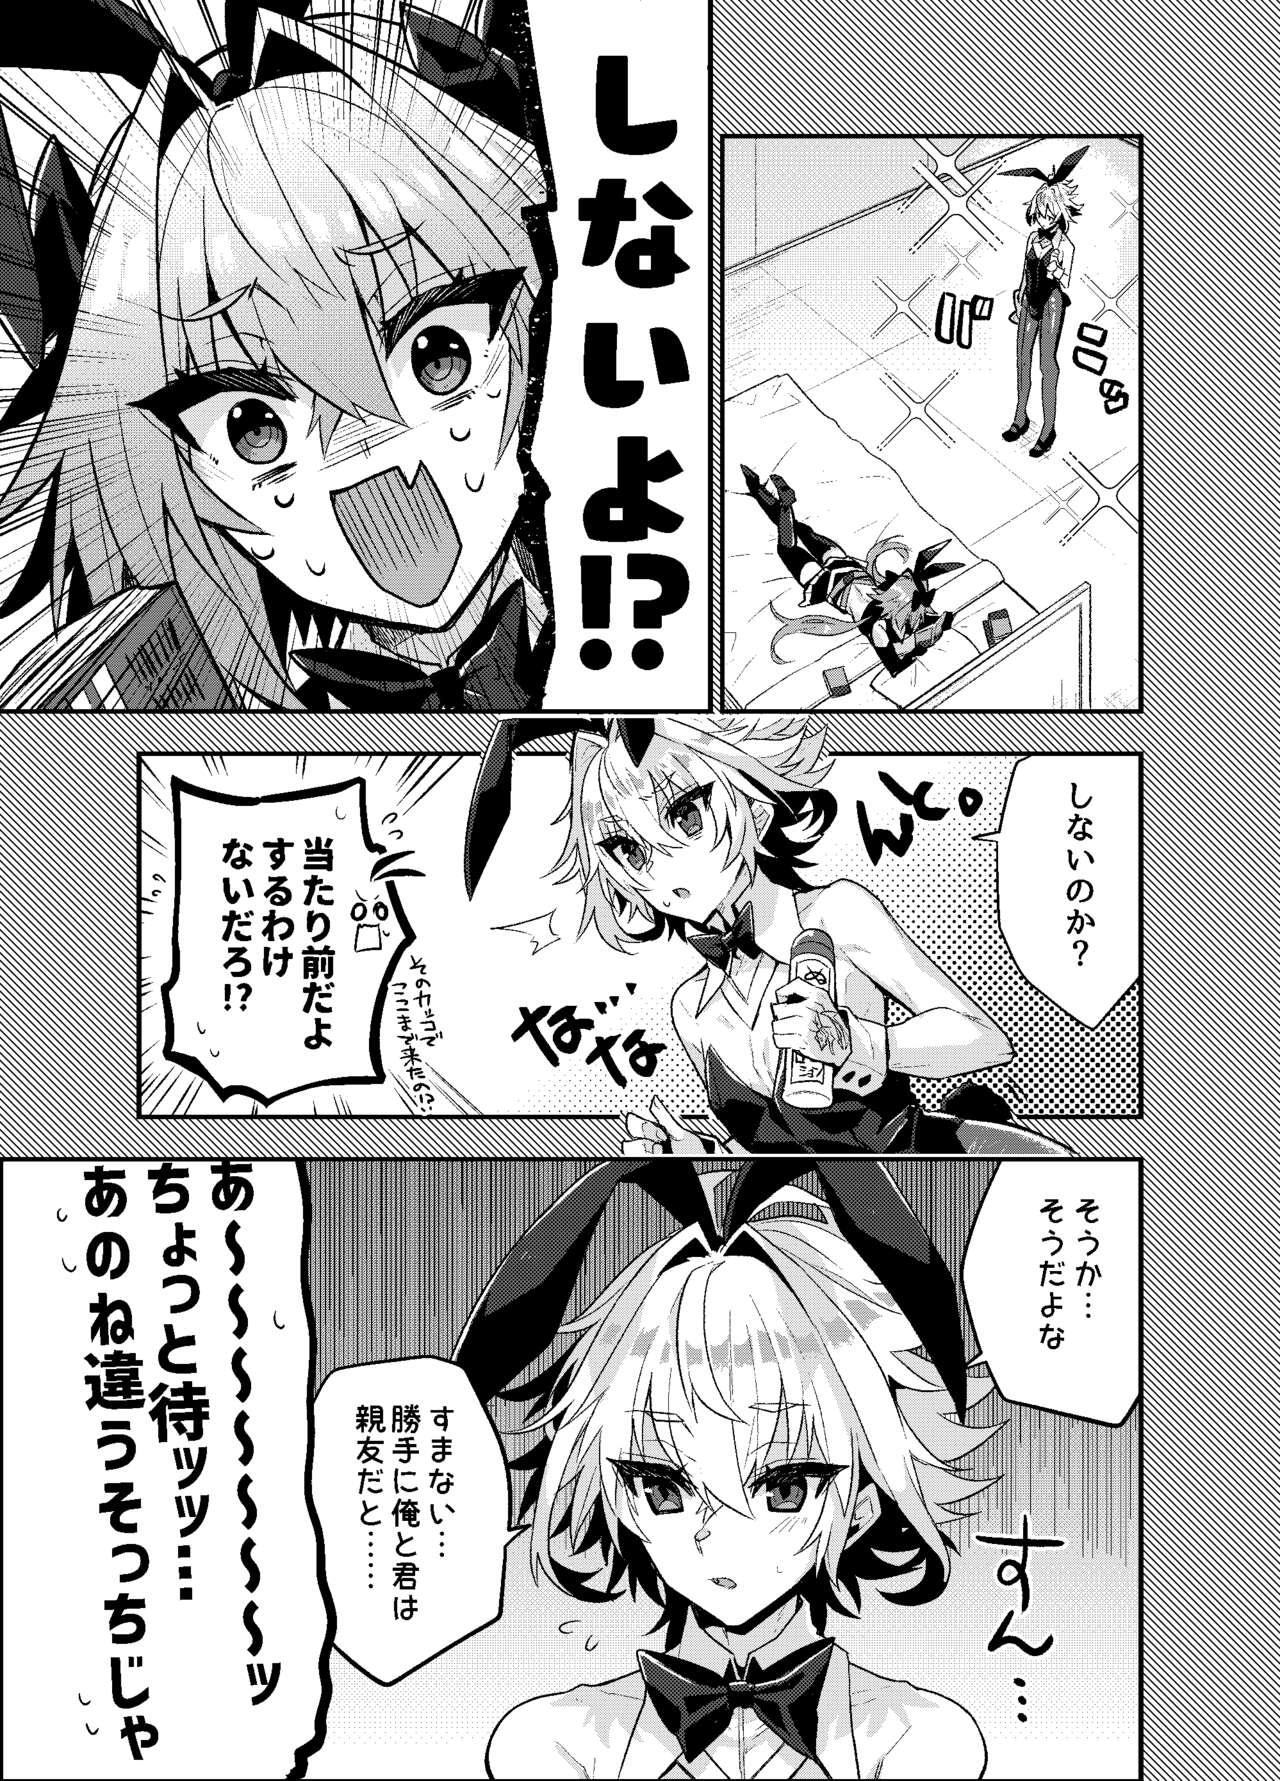 Rubbing Naka no Ii Shinyuu wa Bunny Cosplay Kijoui Koubi o Sururashii zo - Fate grand order Pmv - Page 2